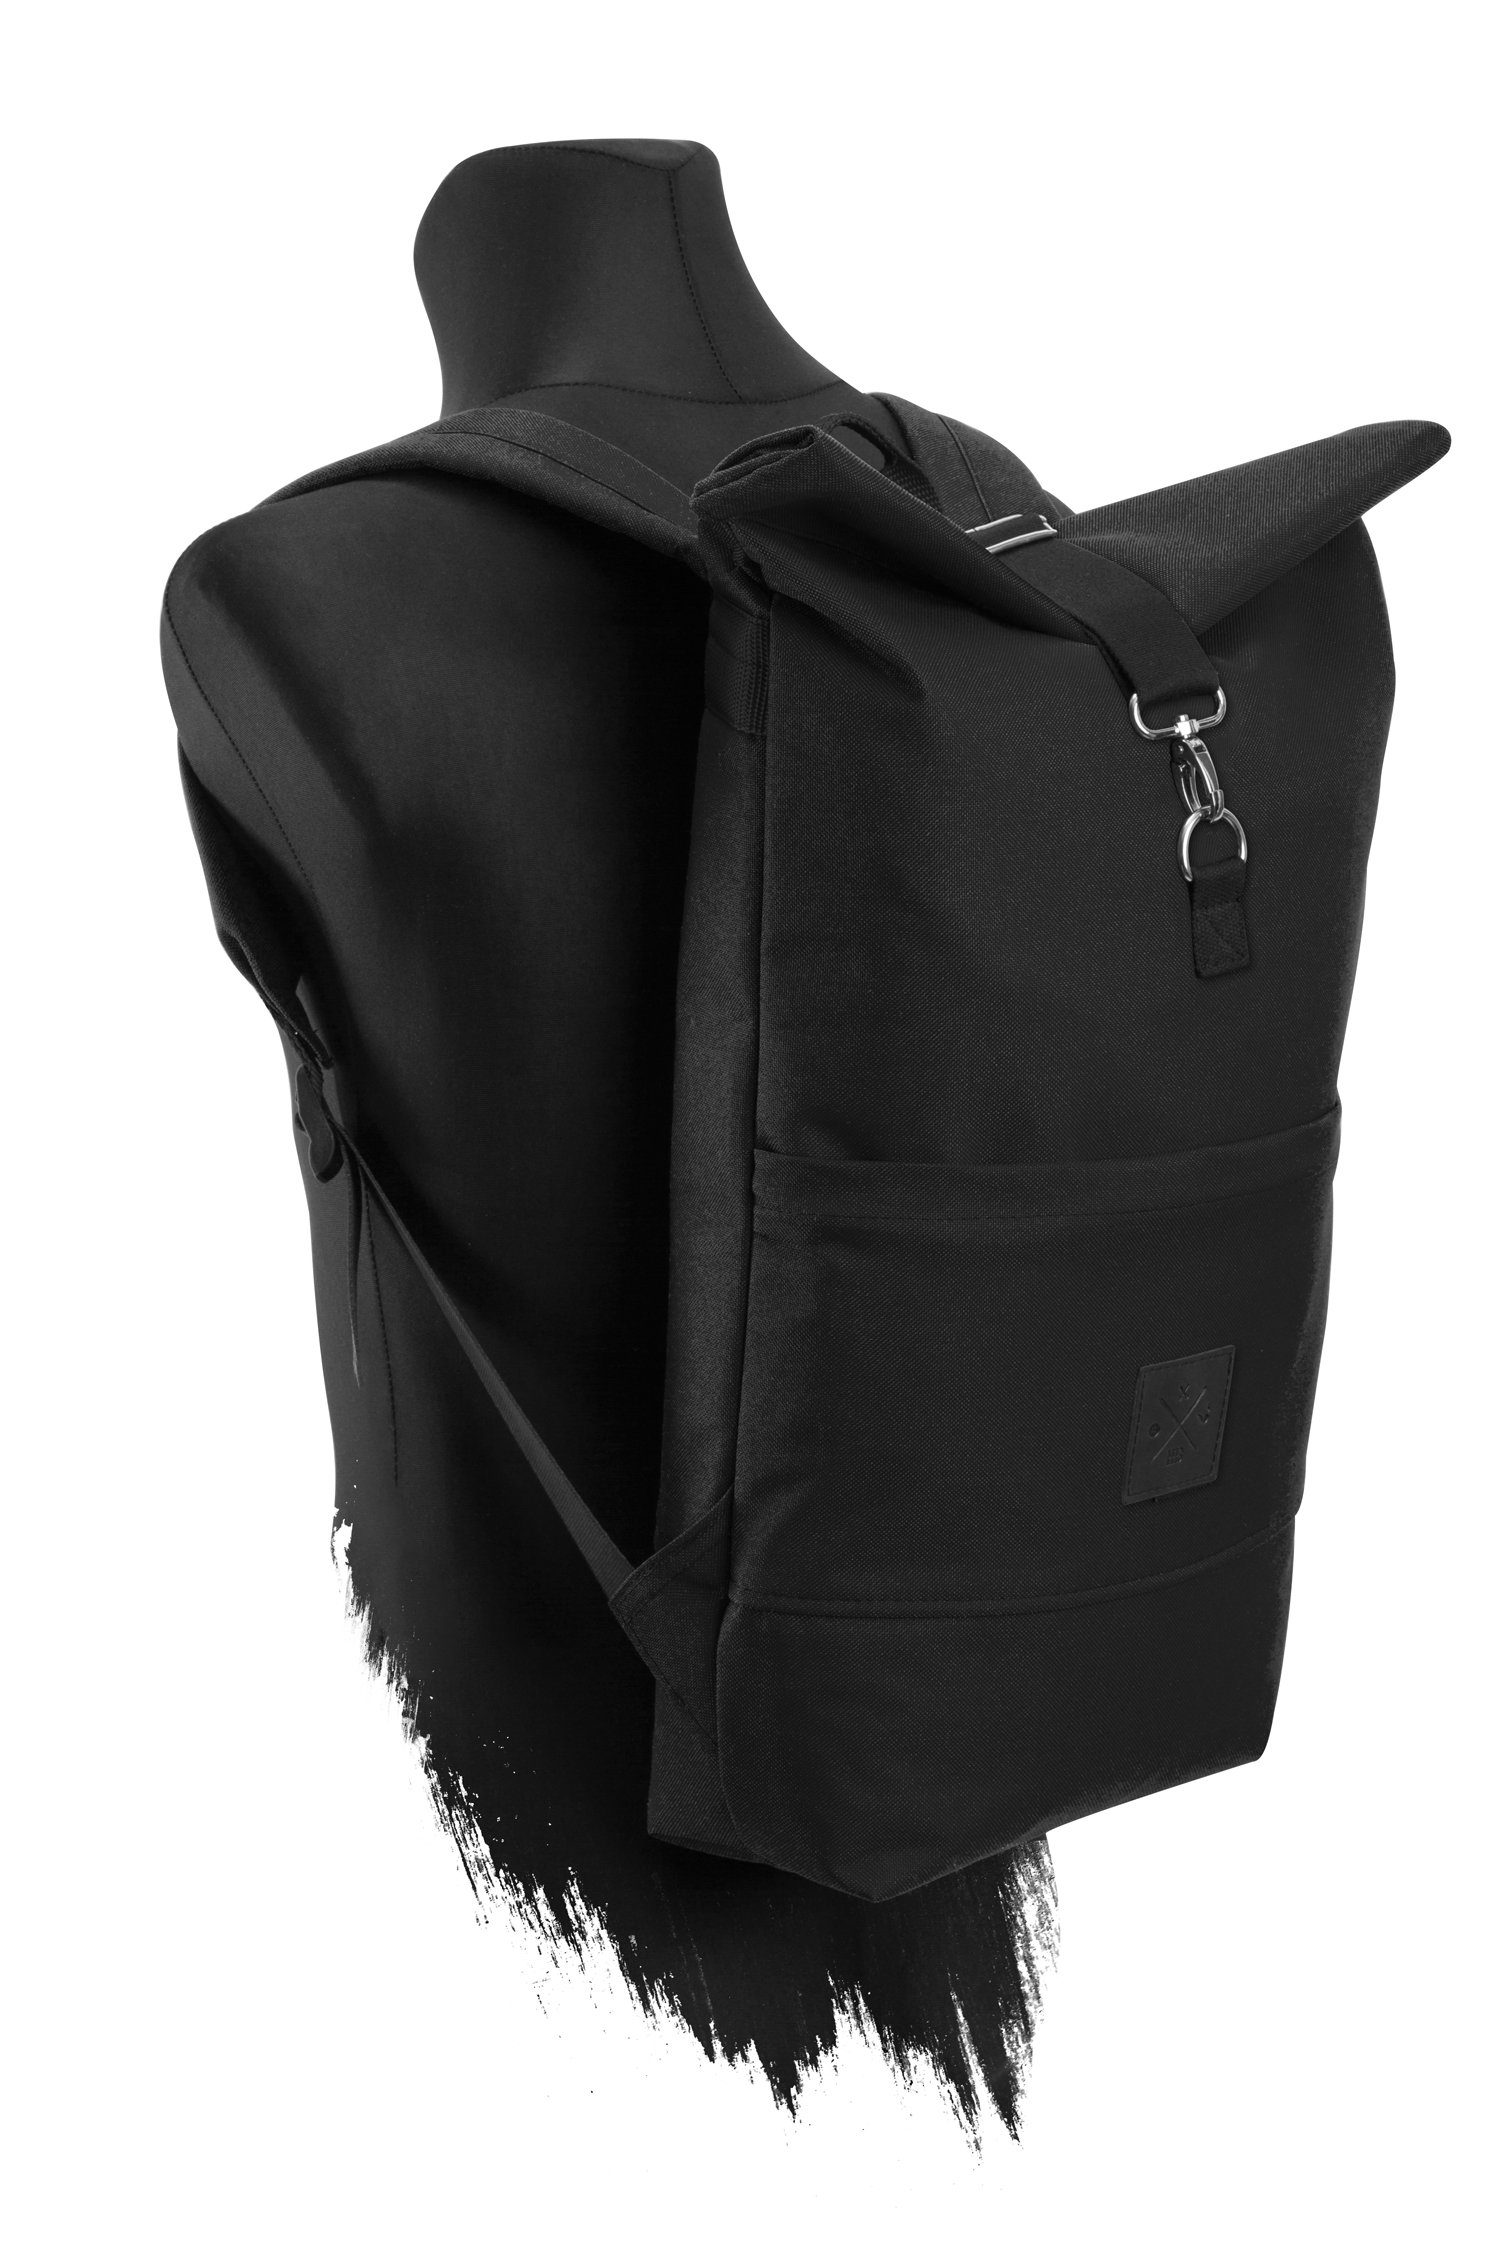 Manufaktur13 Roll-Top Tagesrucksack mit wasserdicht/wasserabweisend, Backpack Out Gurte Rollverschluss, verstellbare Black Rucksack -